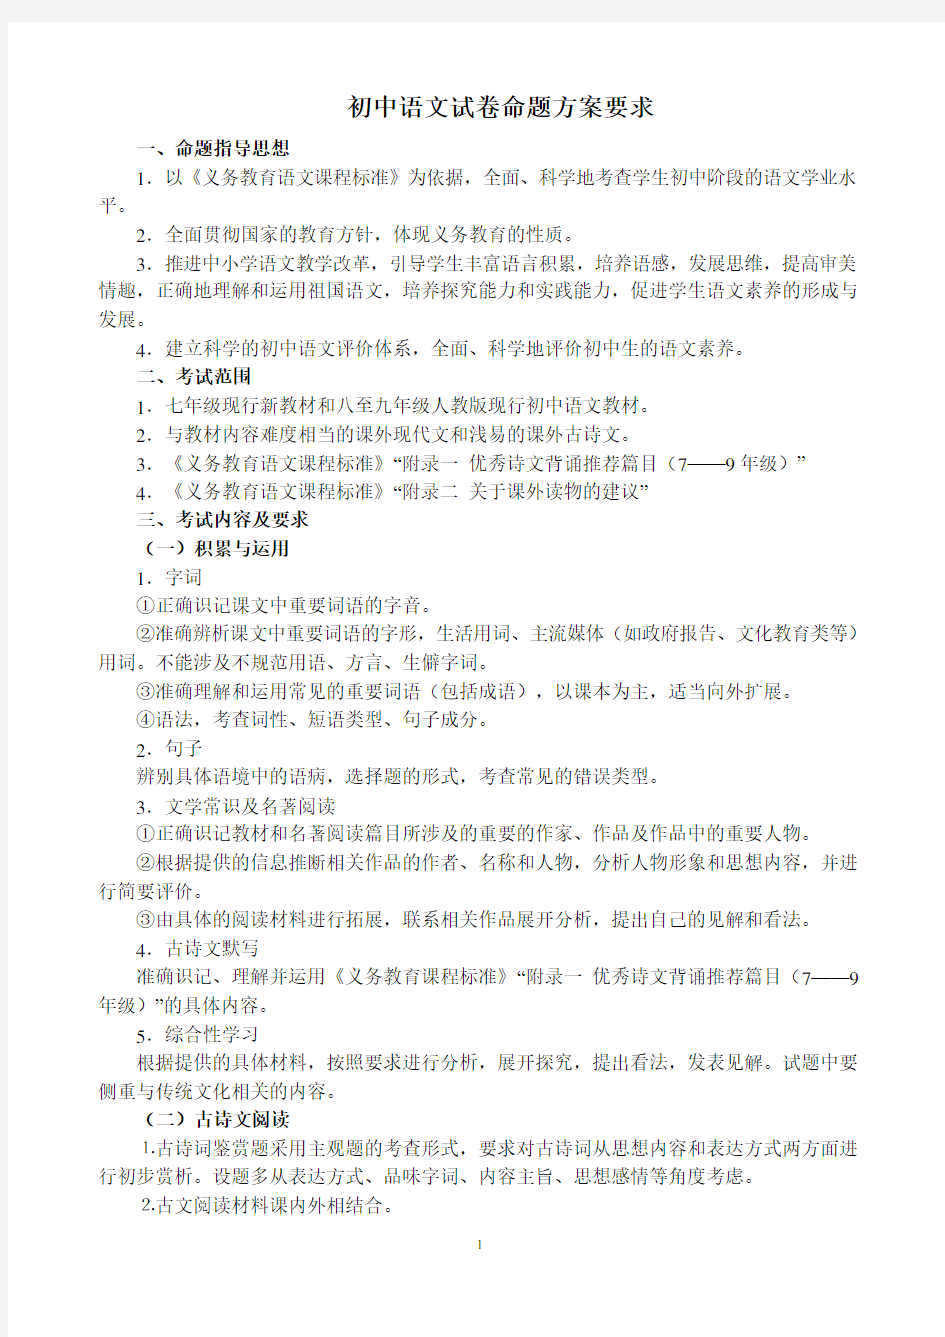 初中语文试题命制的要求 细节